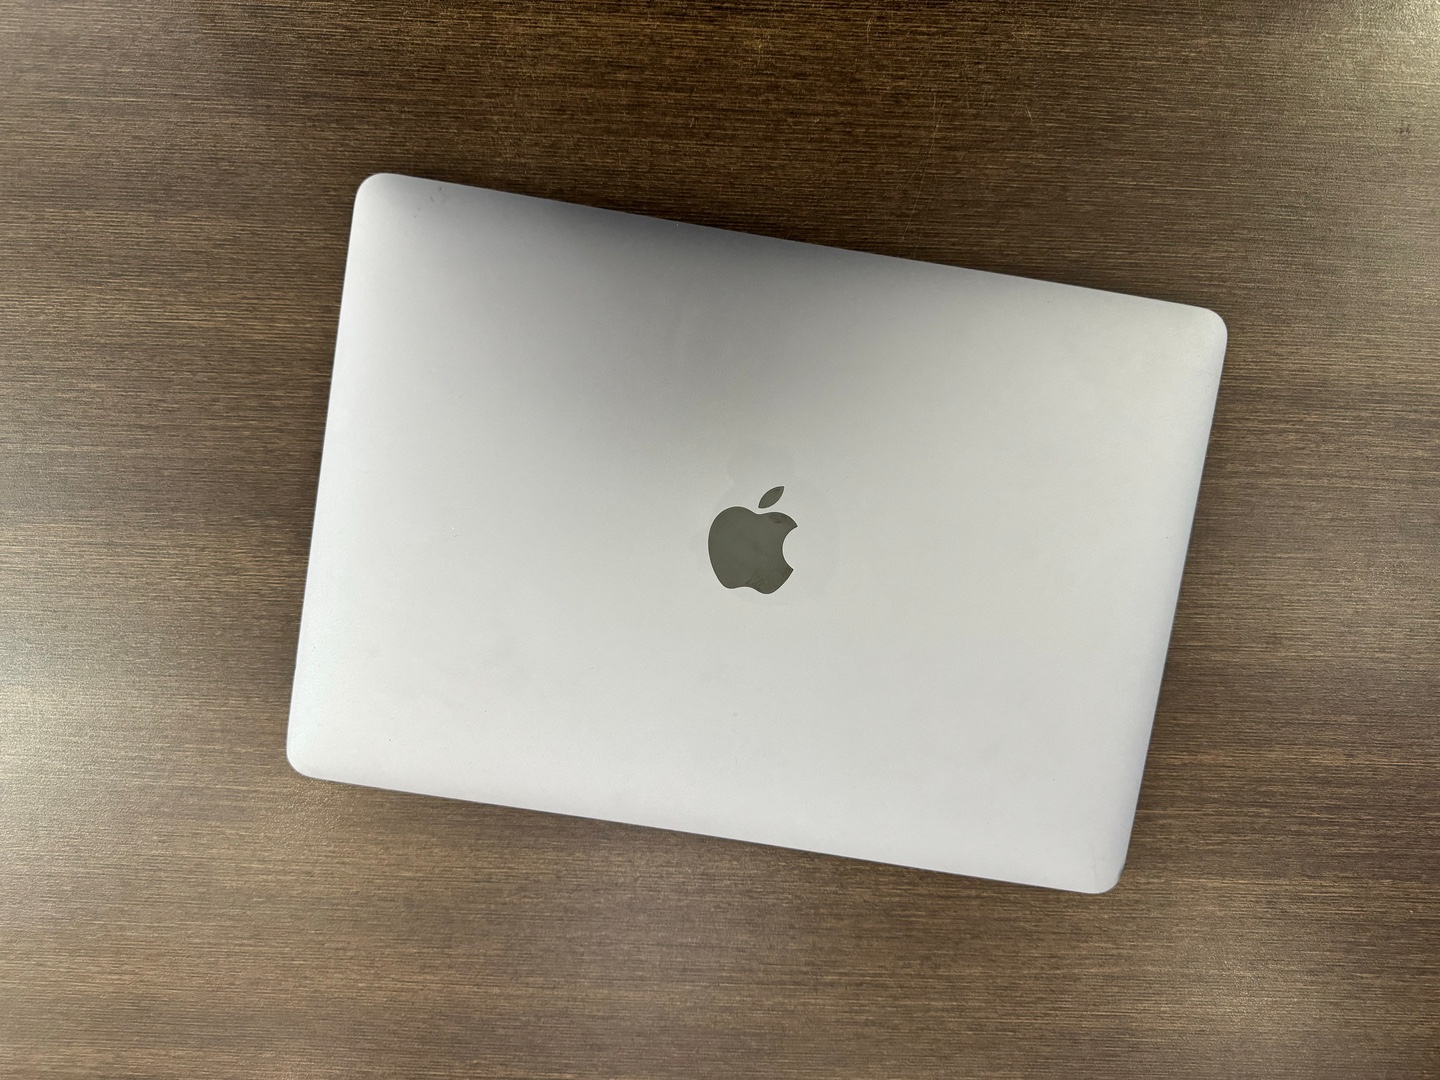 computadoras y laptops - MacBook Pro 13-inch M1 Apple Chip 256GB / 8GB RAM Space Como Nuevo,$ 39,400 NEG